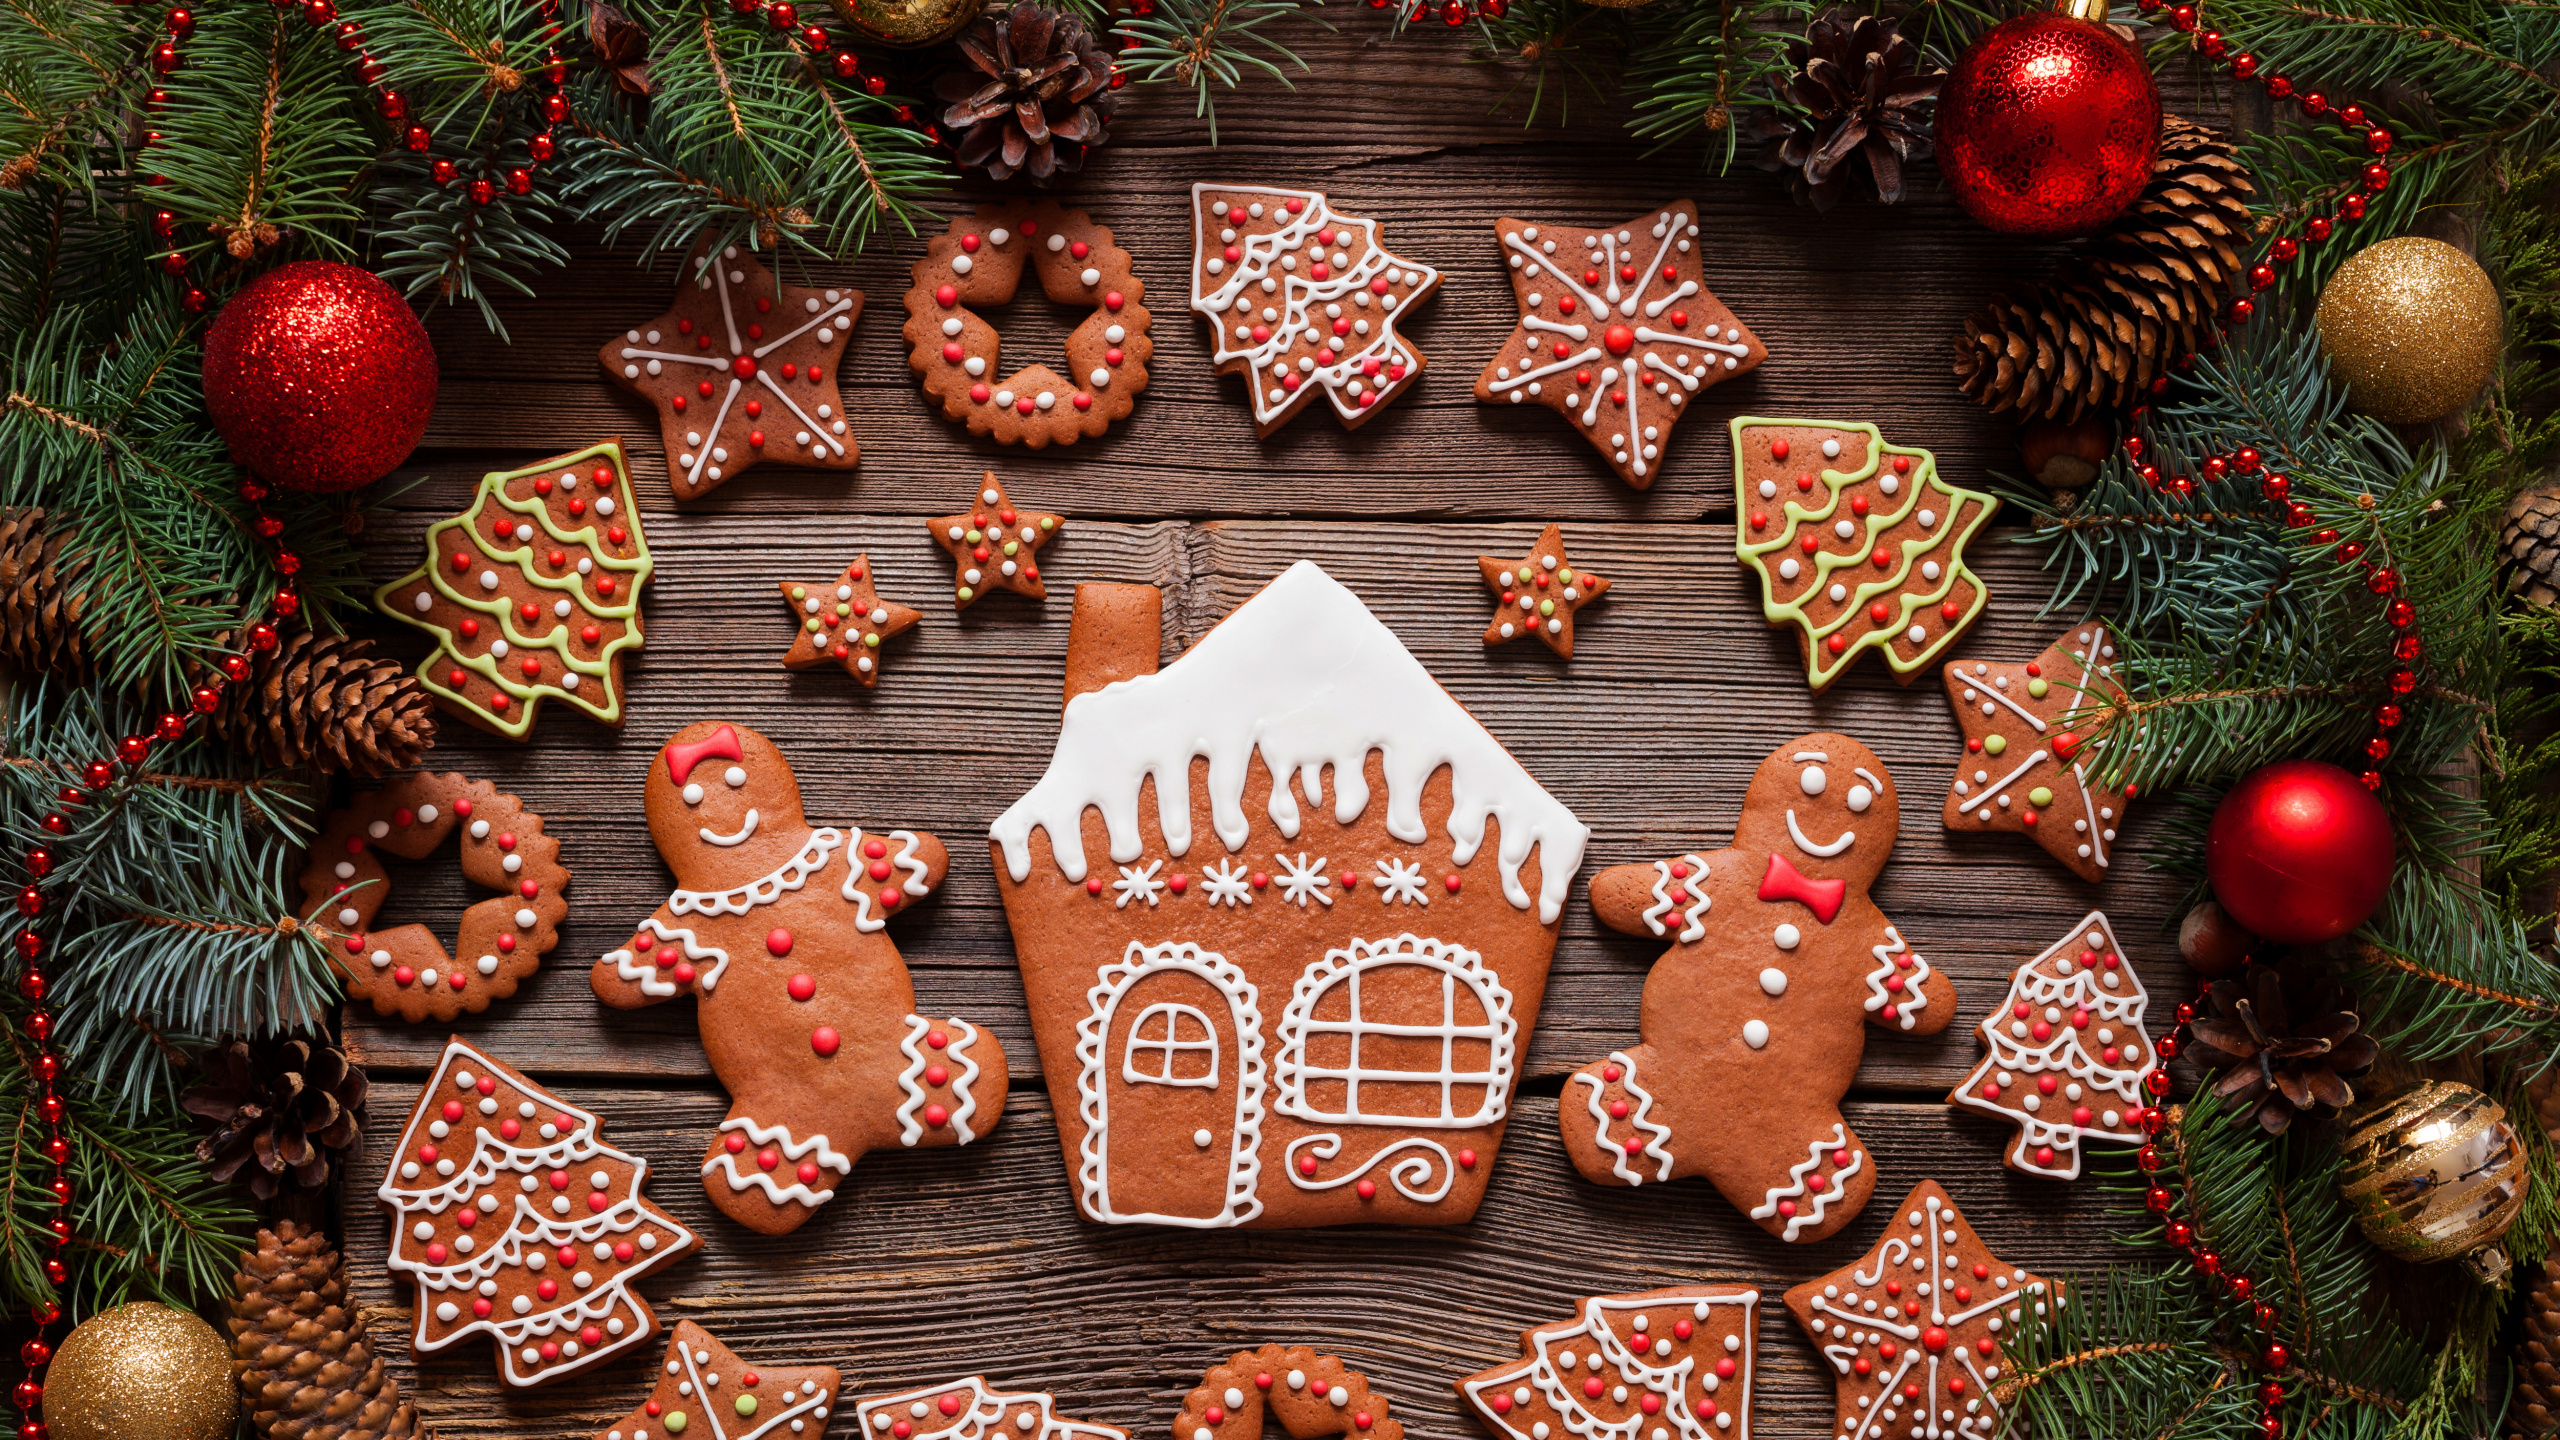 姜饼房, 圣诞节那天, 姜饼的人, 新的一年, 圣诞树 壁纸 2560x1440 允许